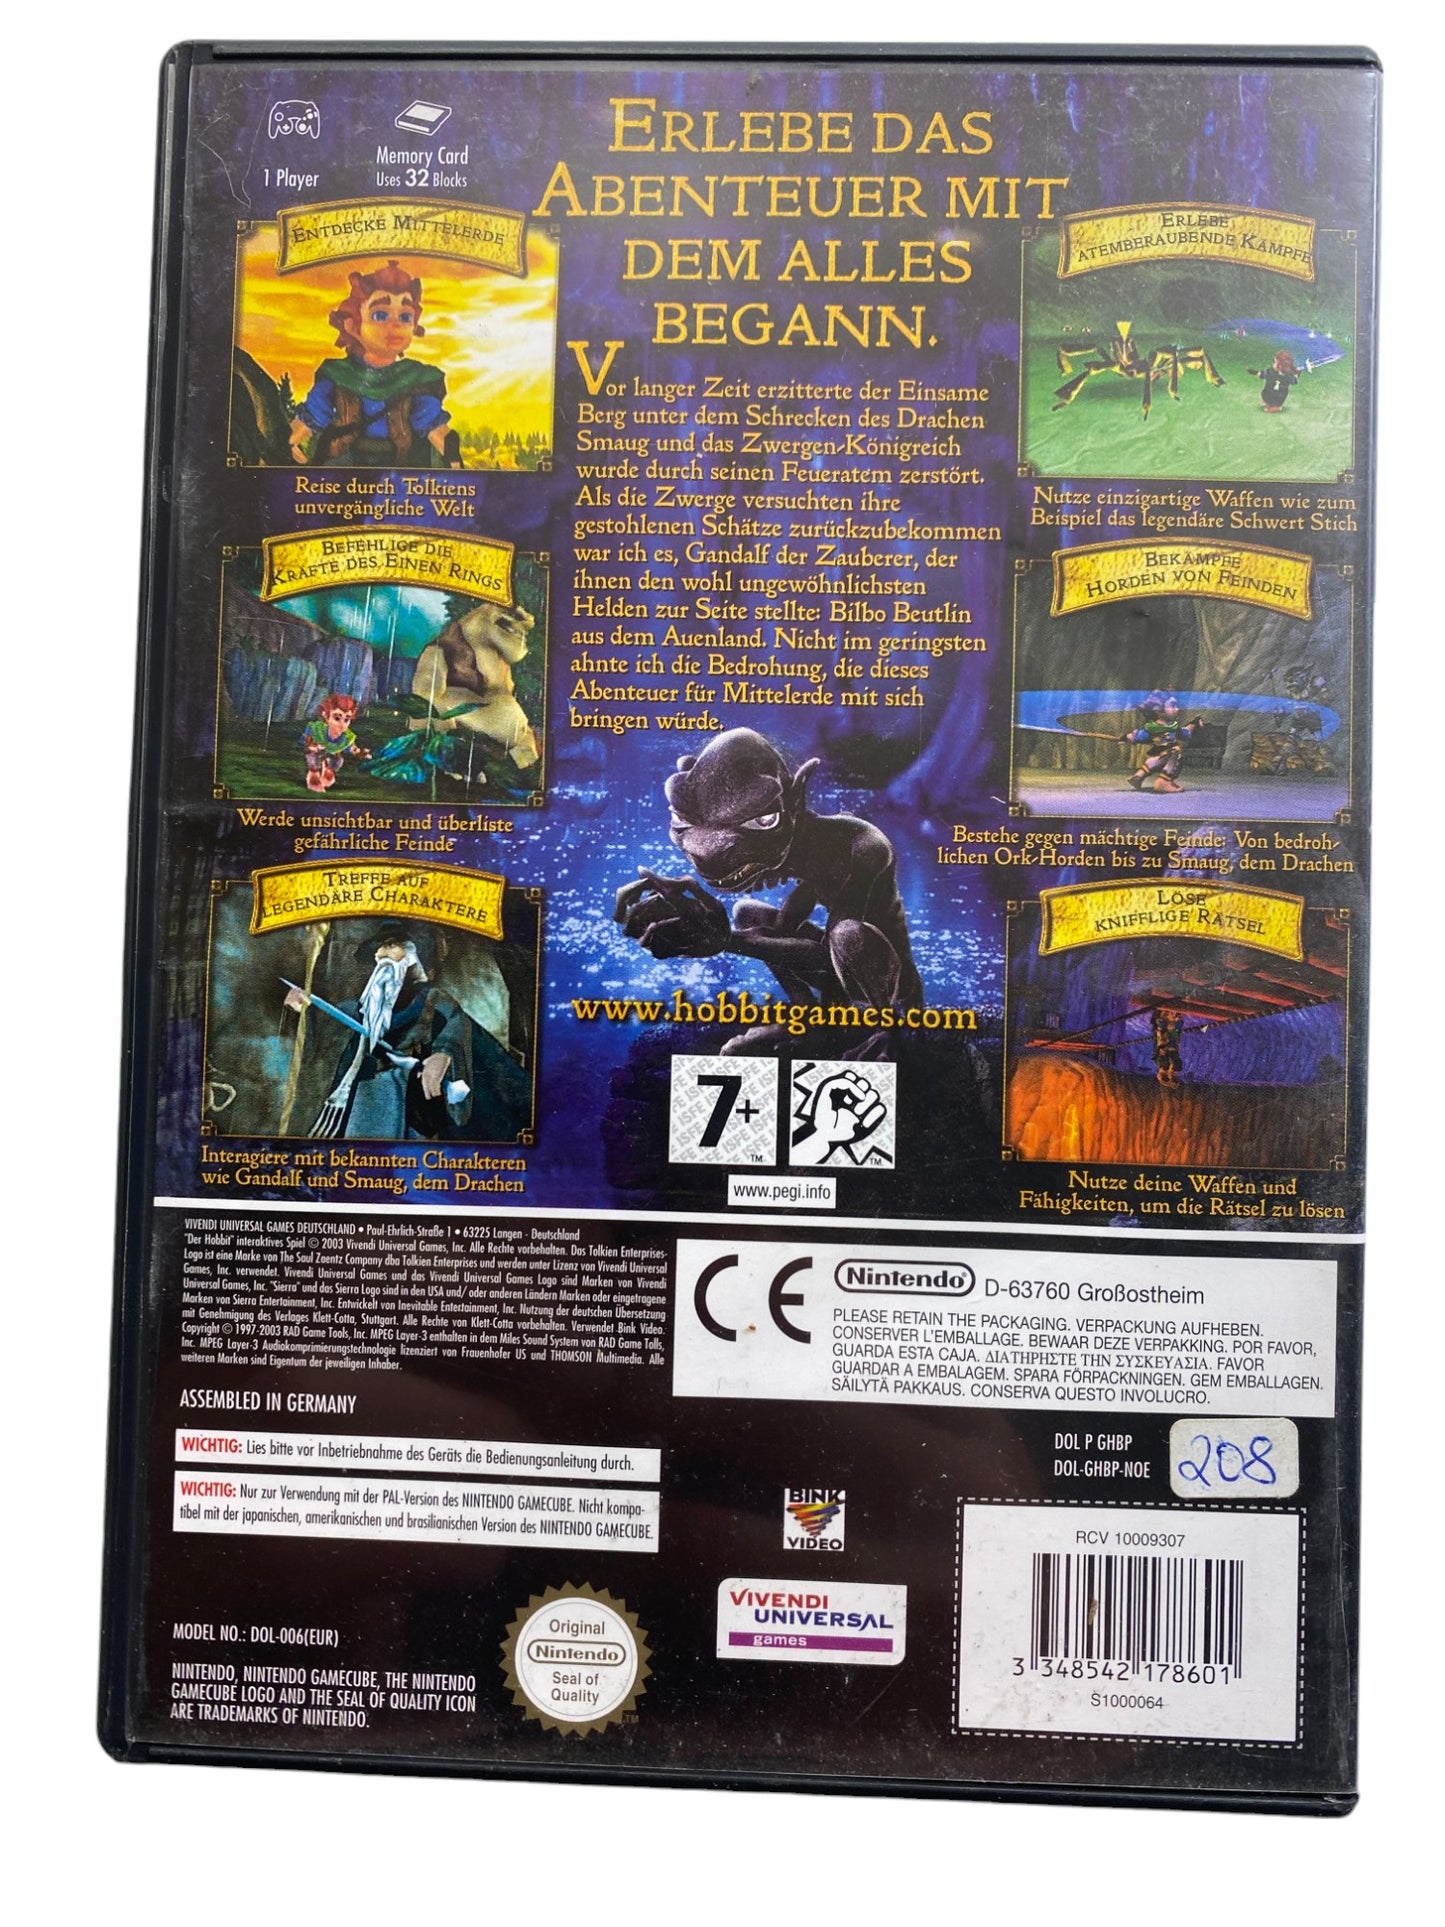 Der Hobbit-Die Vorgeschichte zu "Der Herr der Ringe" - Nintendo GameCube